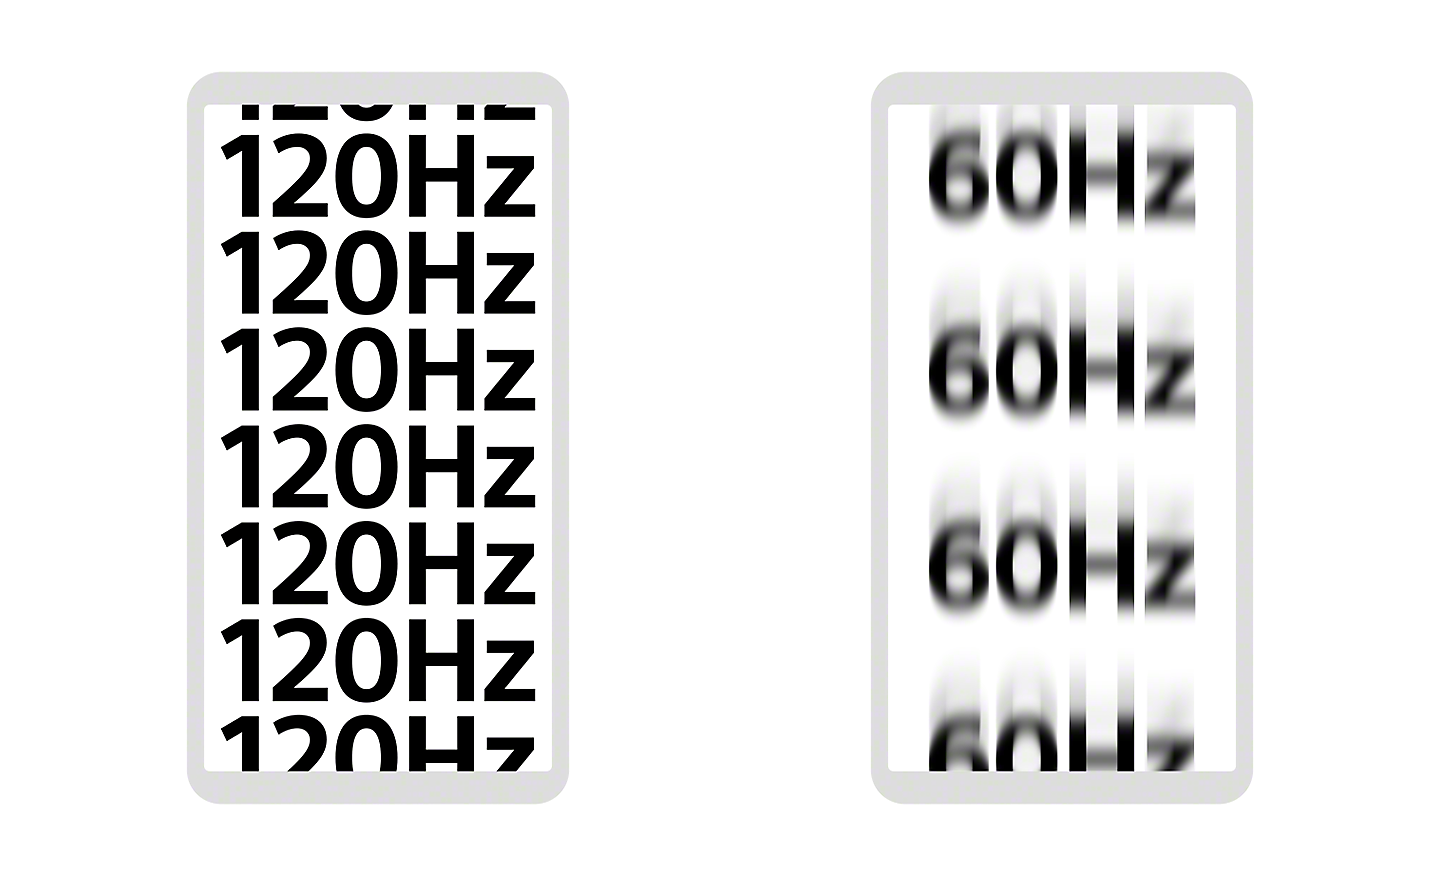 以兩個智能手機顯示屏作為示範，一個顯示 120Hz 清晰對焦，另一個顯示 60Hz 失焦